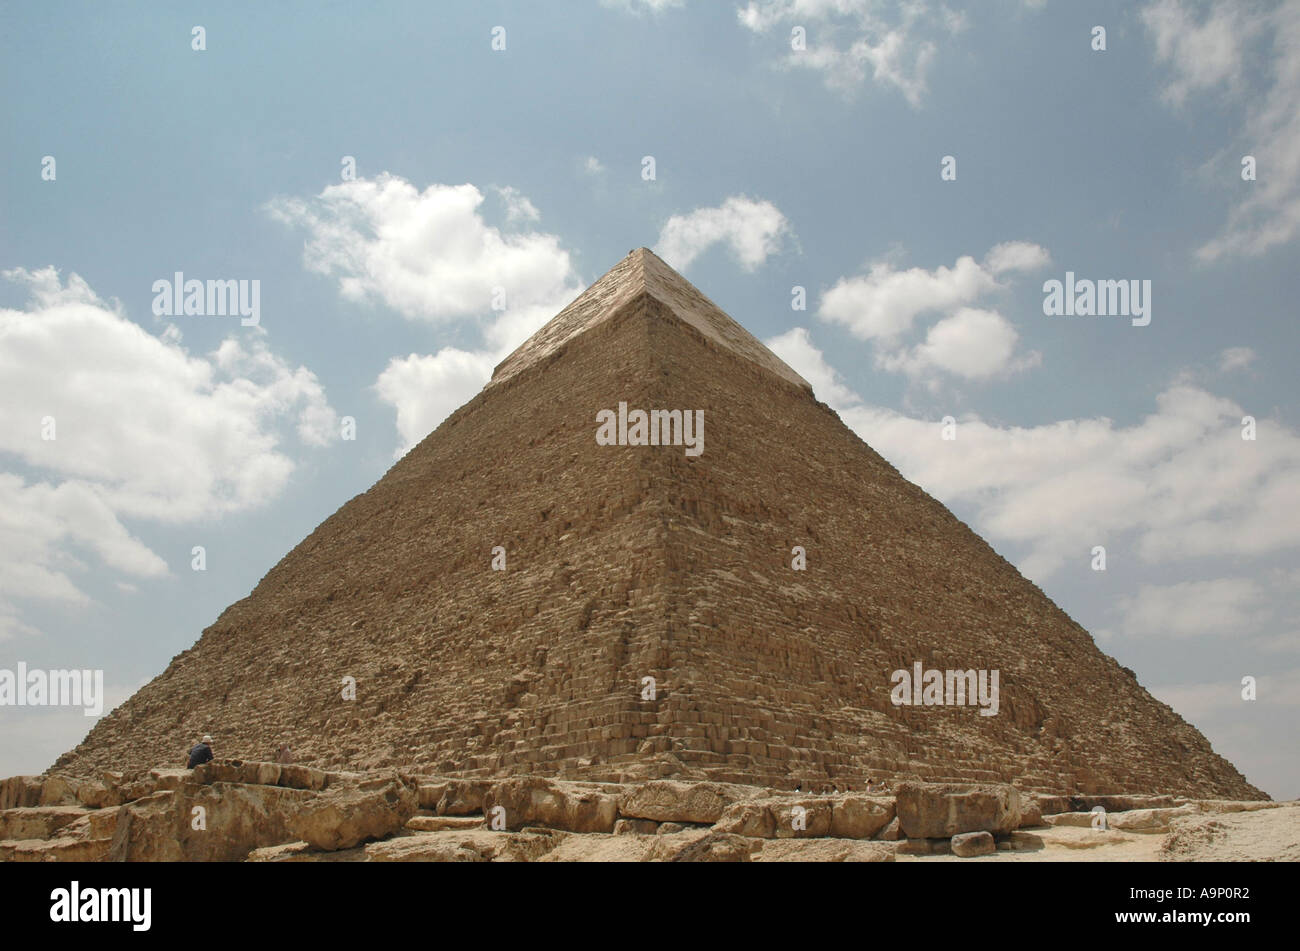 The Pyramid of Khafre, Giza, Cairo, Egypt Stock Photo - Alamy